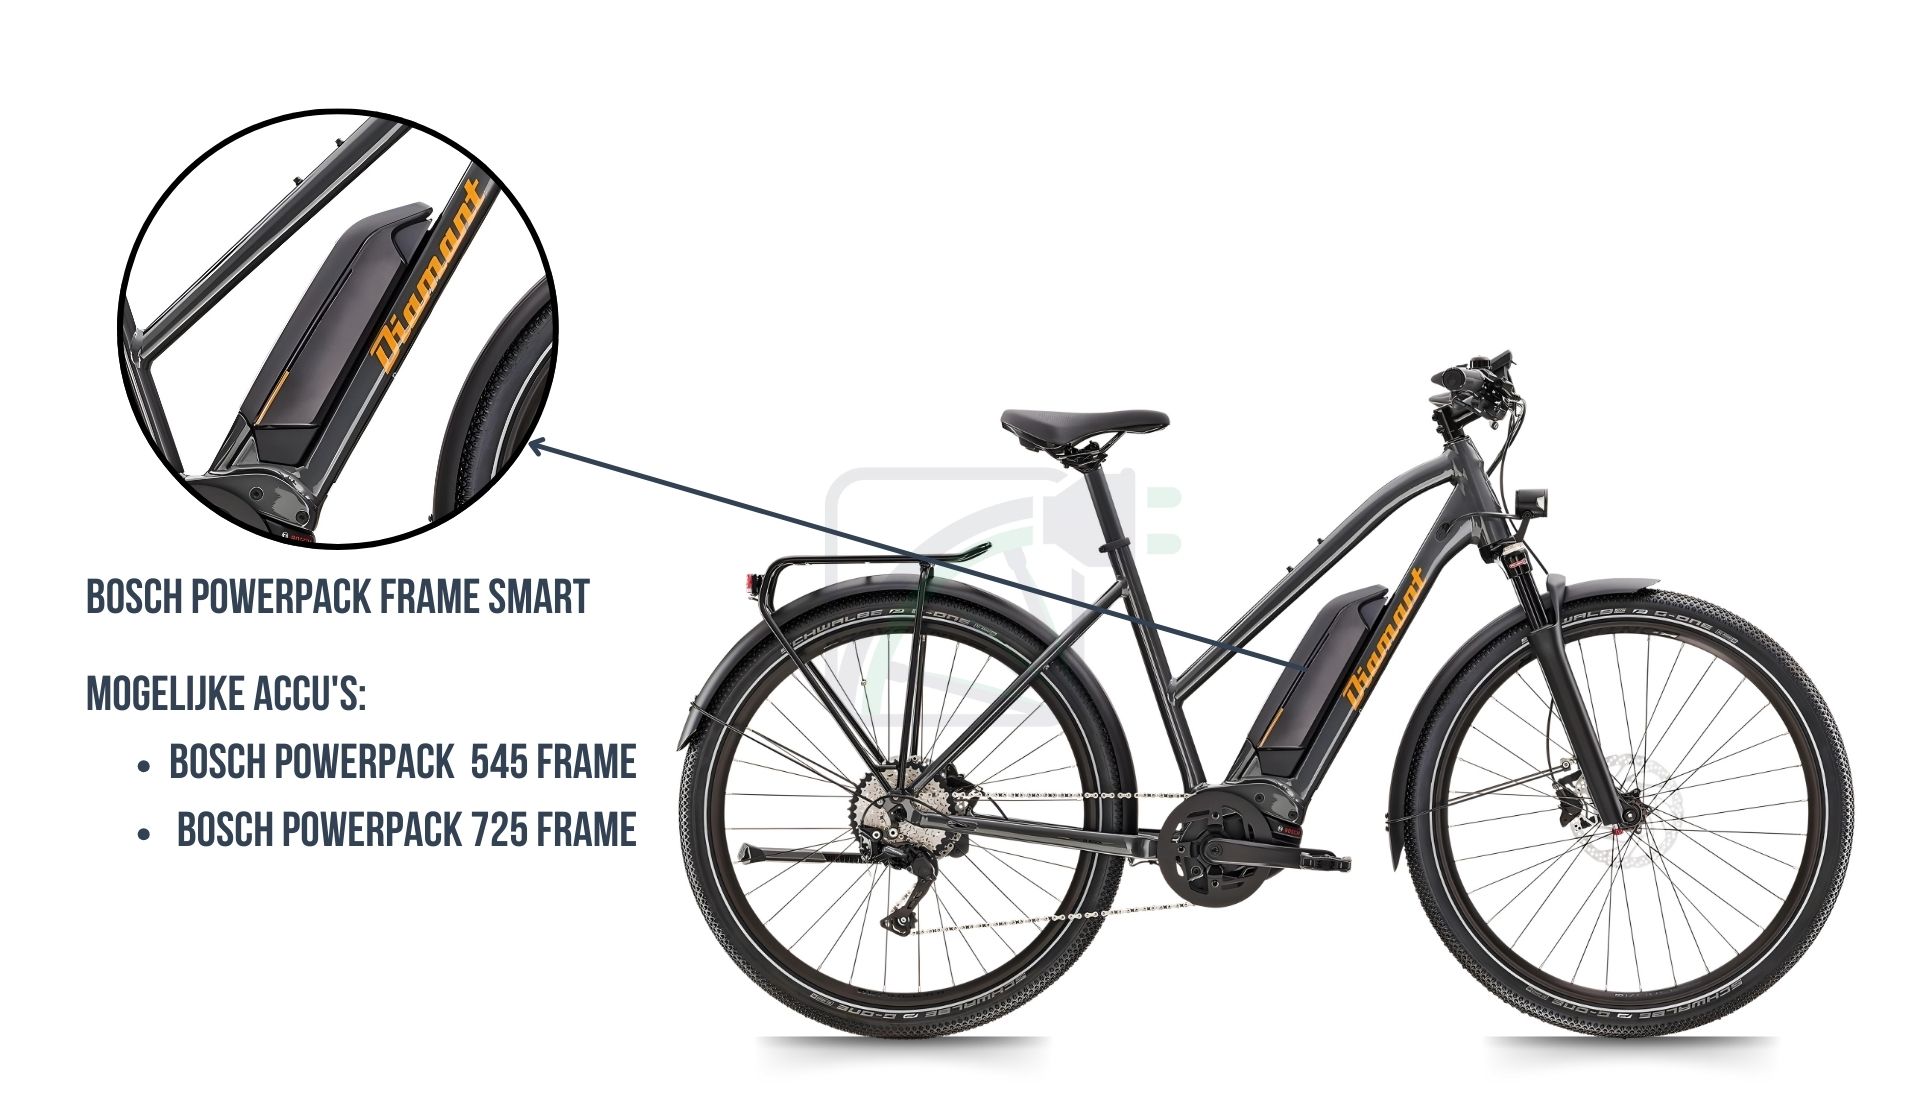 Op deze afbeelding zie je de Diamant Mandara elektrische fiets. Hierbij is uitgelicht welke fietsaccu er in deze fiets zit. Dit is namelijk de Bosch Powerpack 545 / 725 SMART frame accu.